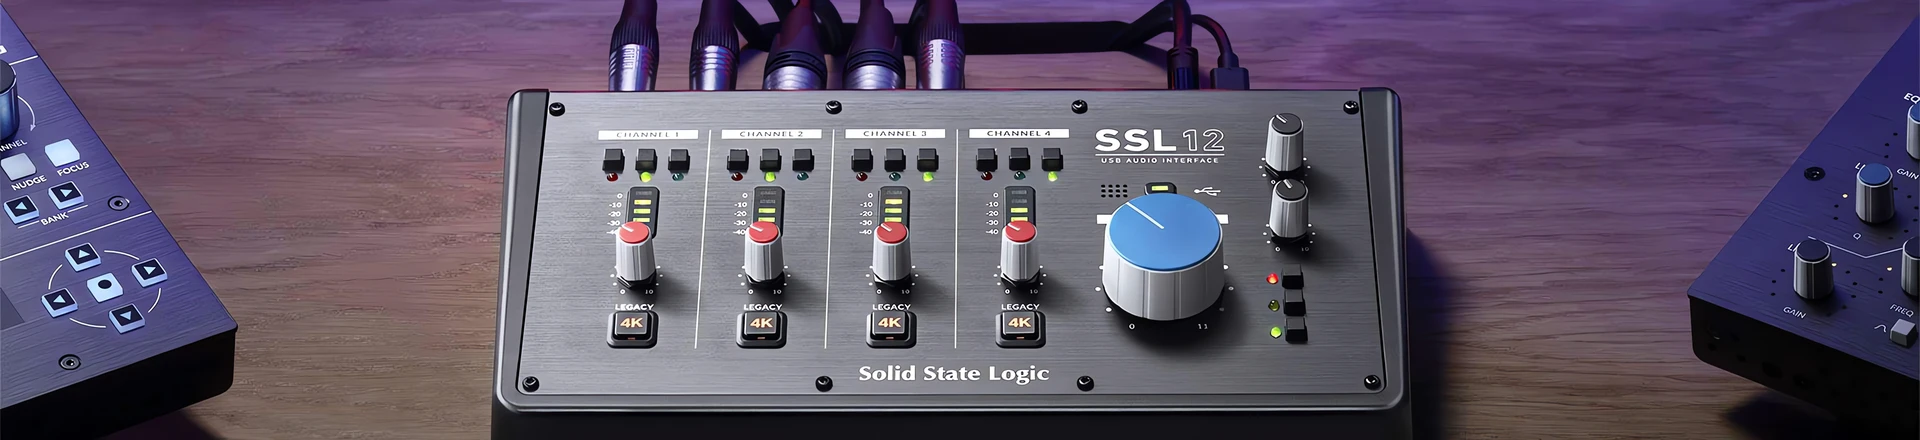 Solid State Logic prezentuje nowy przenośny interfejs audio SSL 12